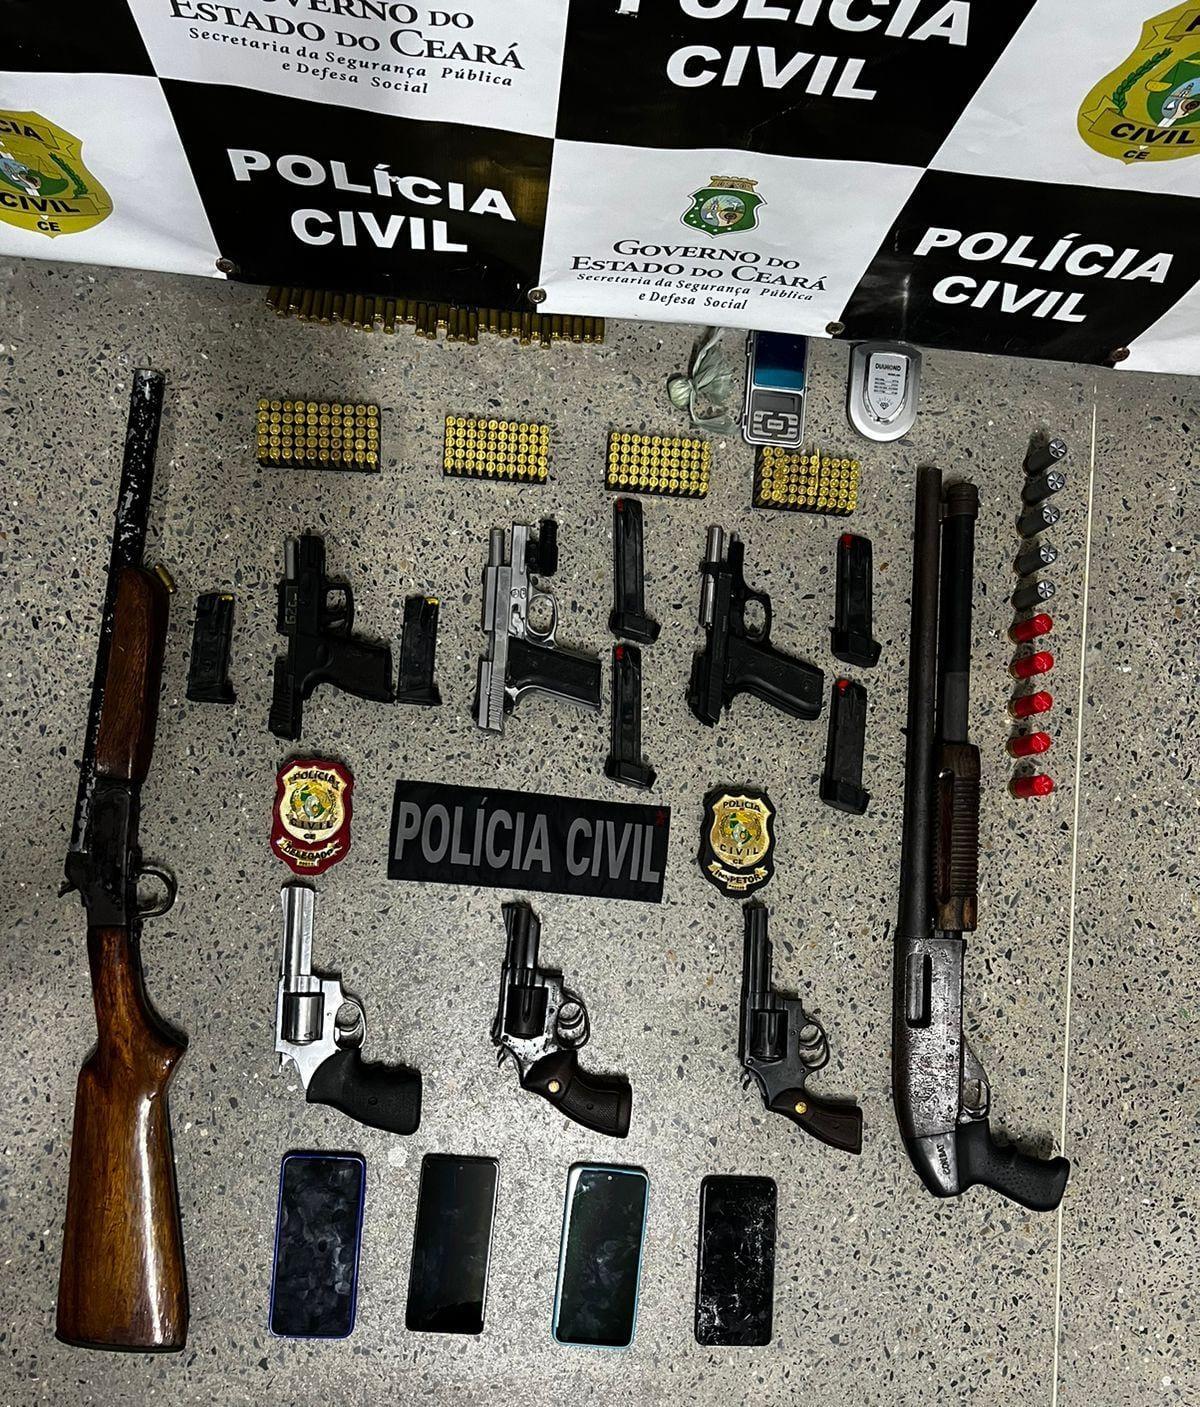 Oito armas de fogo foram apreendidas durante operação da Polícia Civil em Itarema